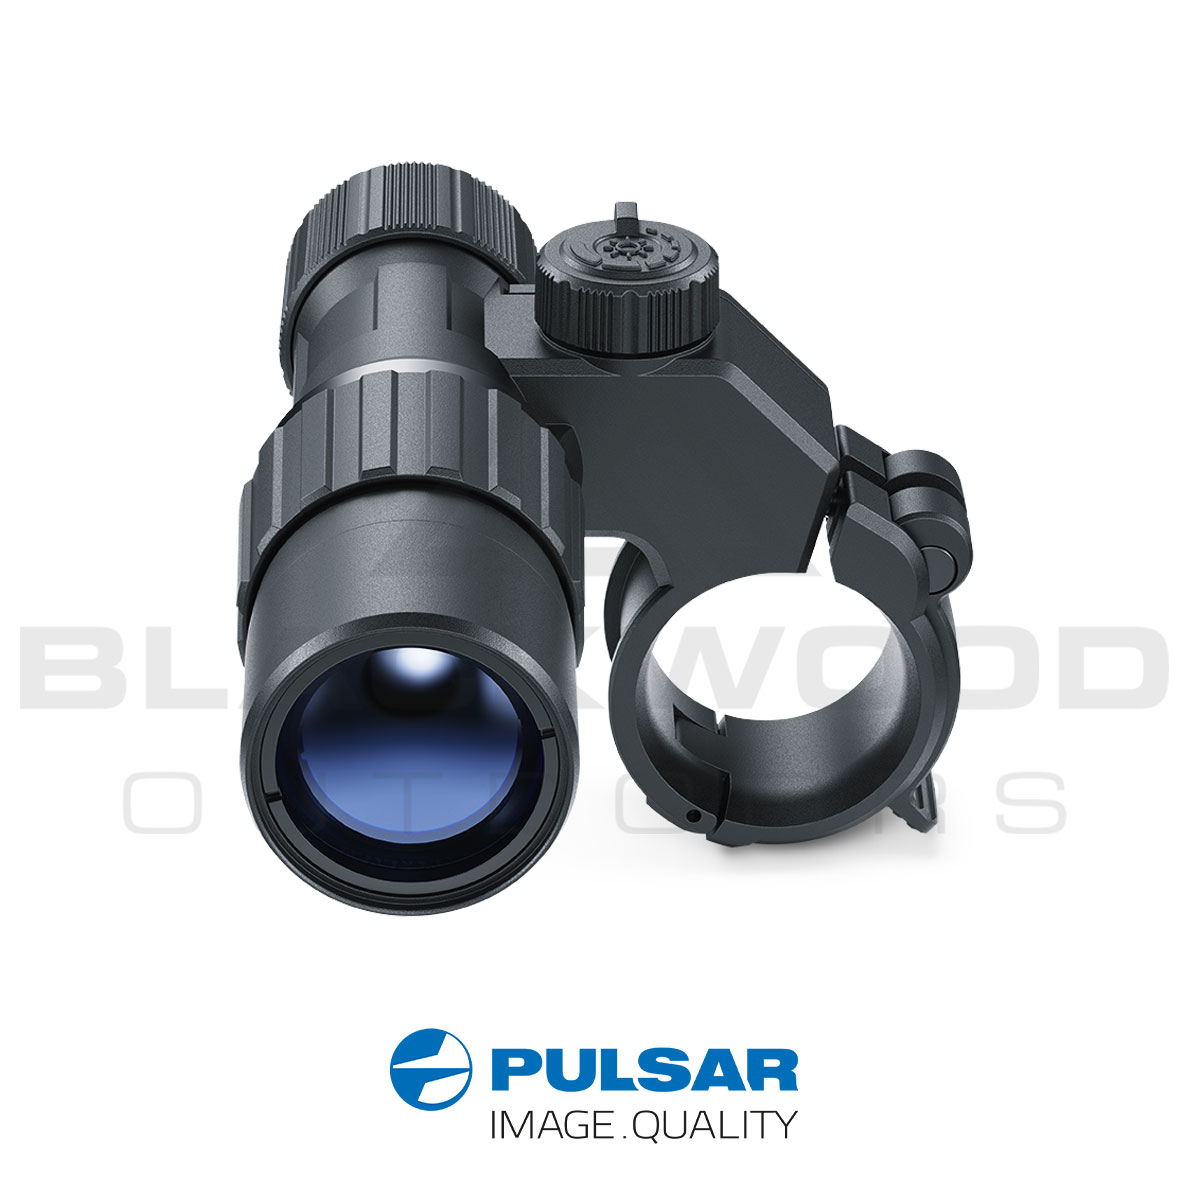 Pulsar Digex X850S and X940S IR Illuminator Torch